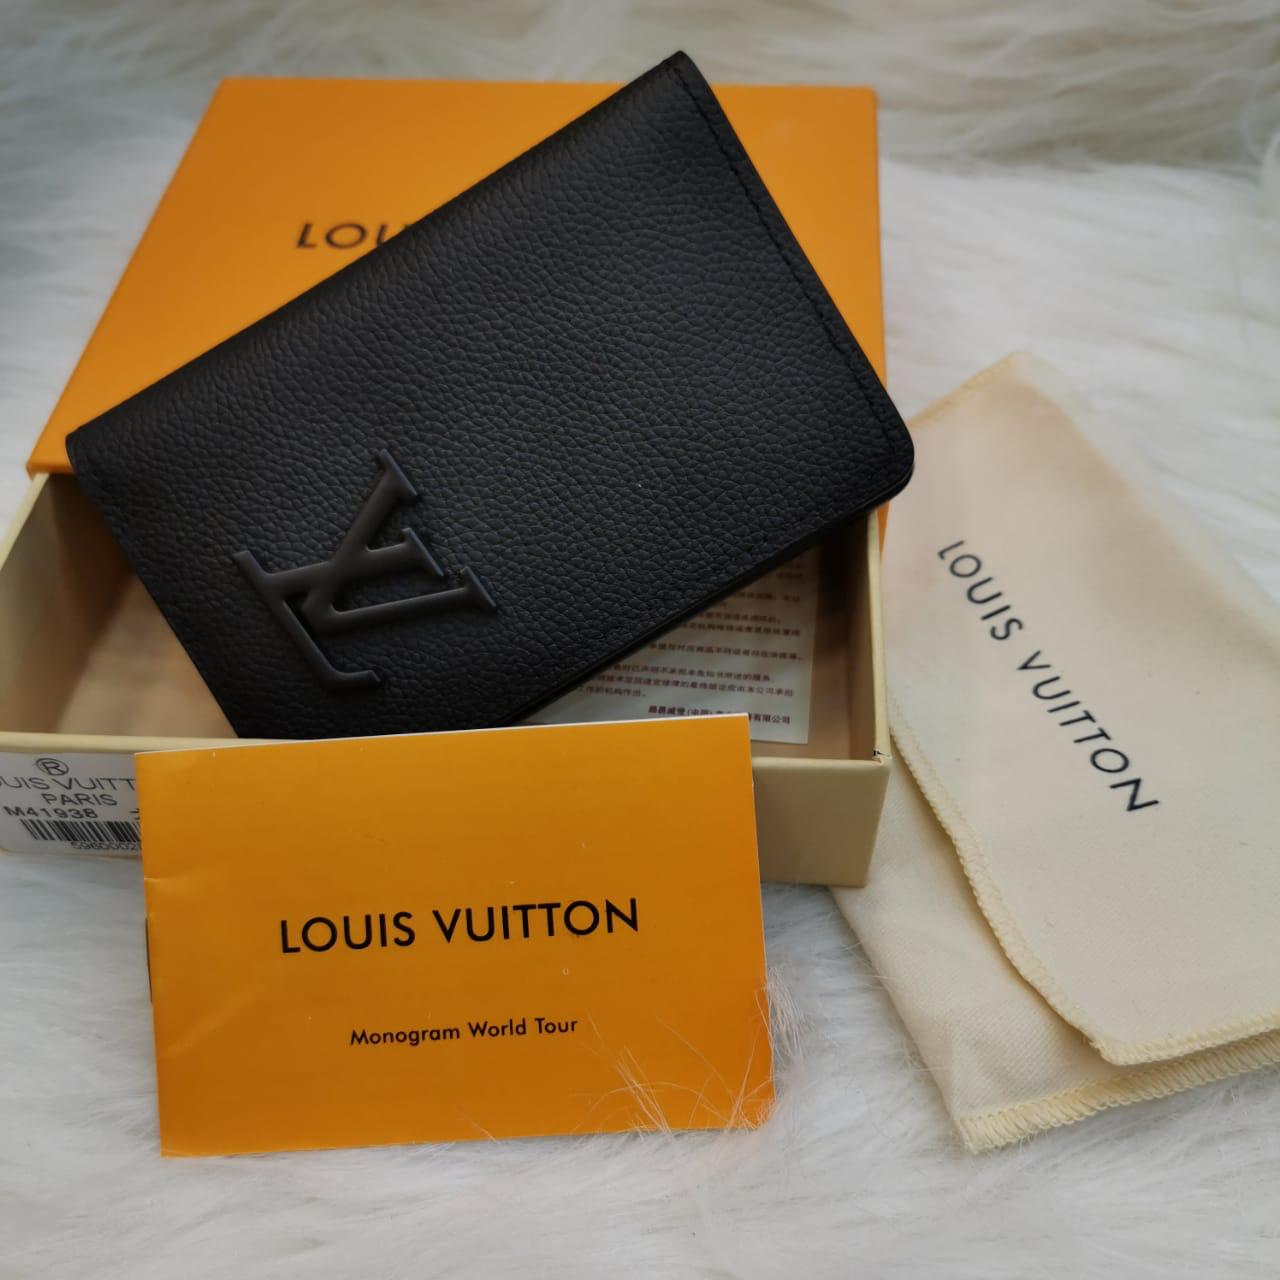 Brinco Louis Vuitton MD06 – Possessive